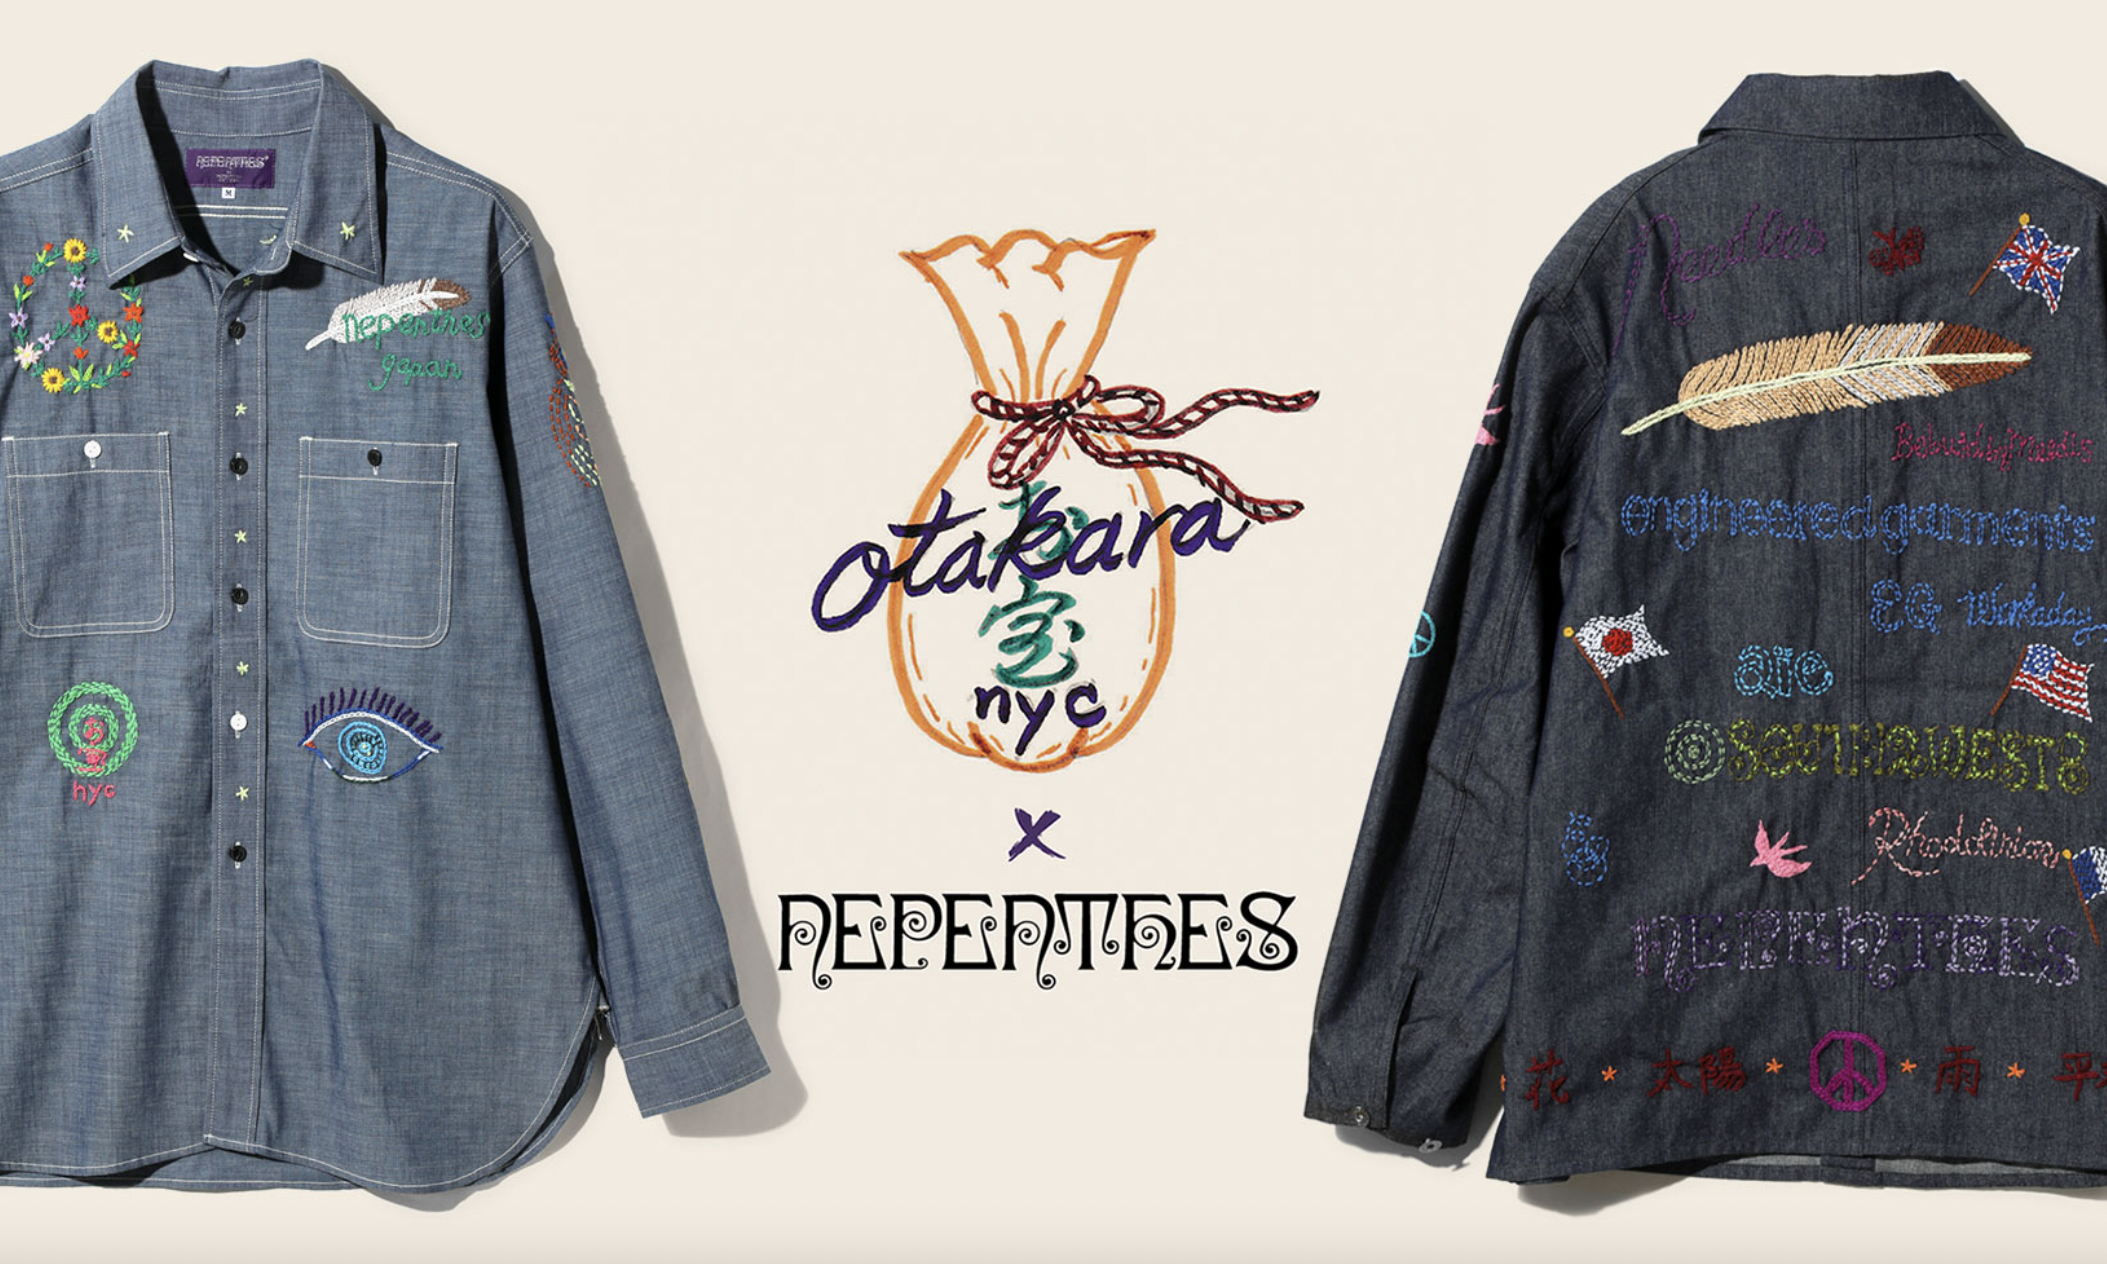 Nepenthes x OTAKARA NYC 合作单品即将发售